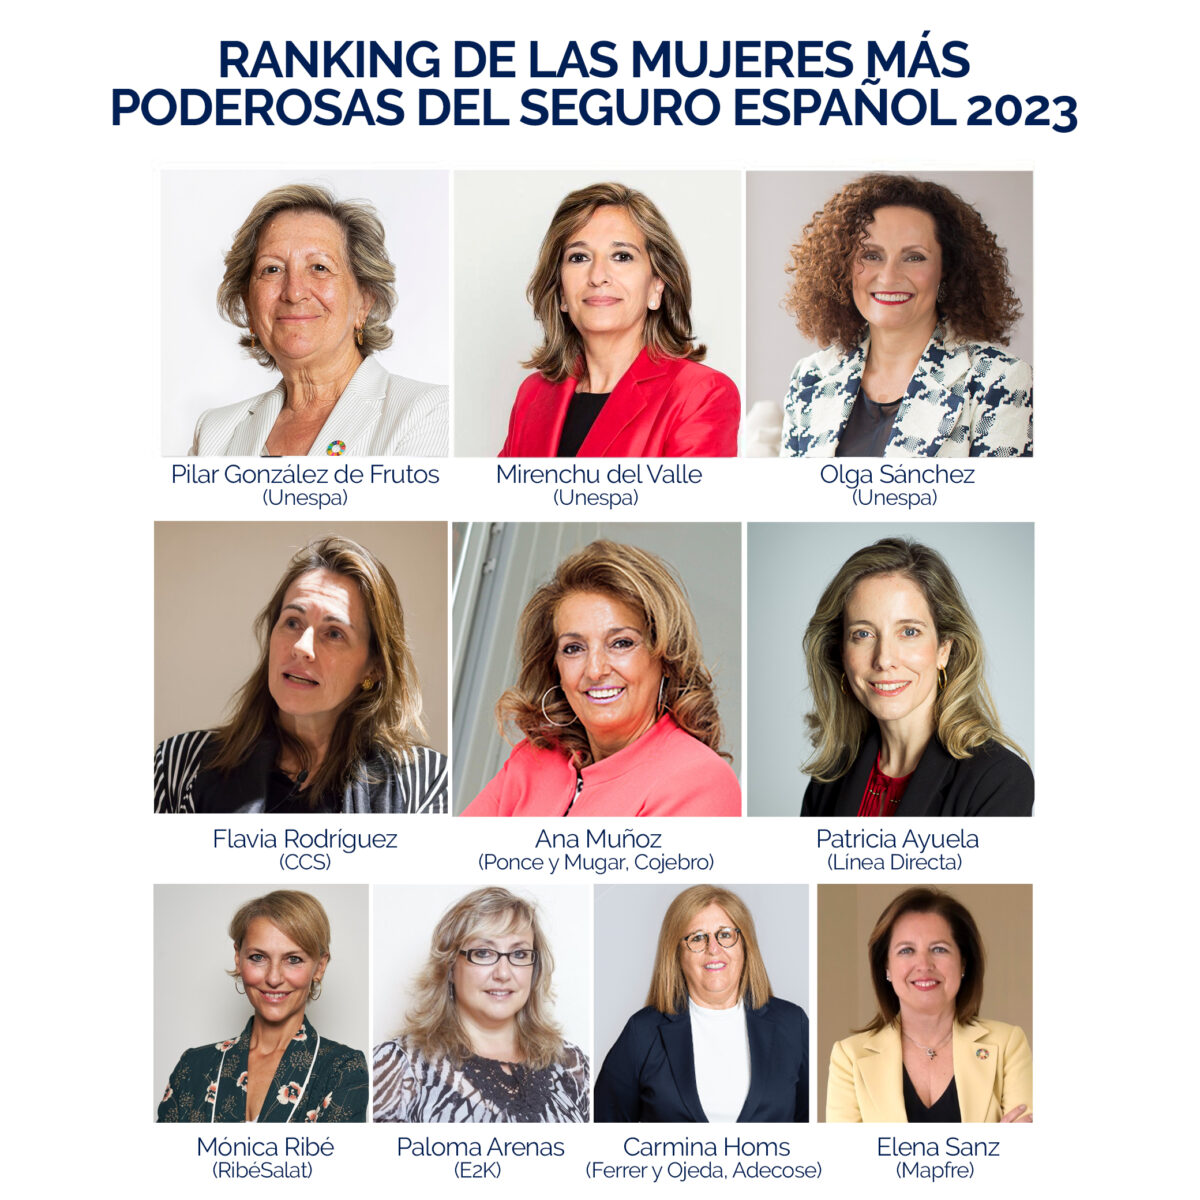 En este momento estás viendo Ana Muñoz en el puesto 5 del nuevo ranking de las mujeres más poderosas del seguro español